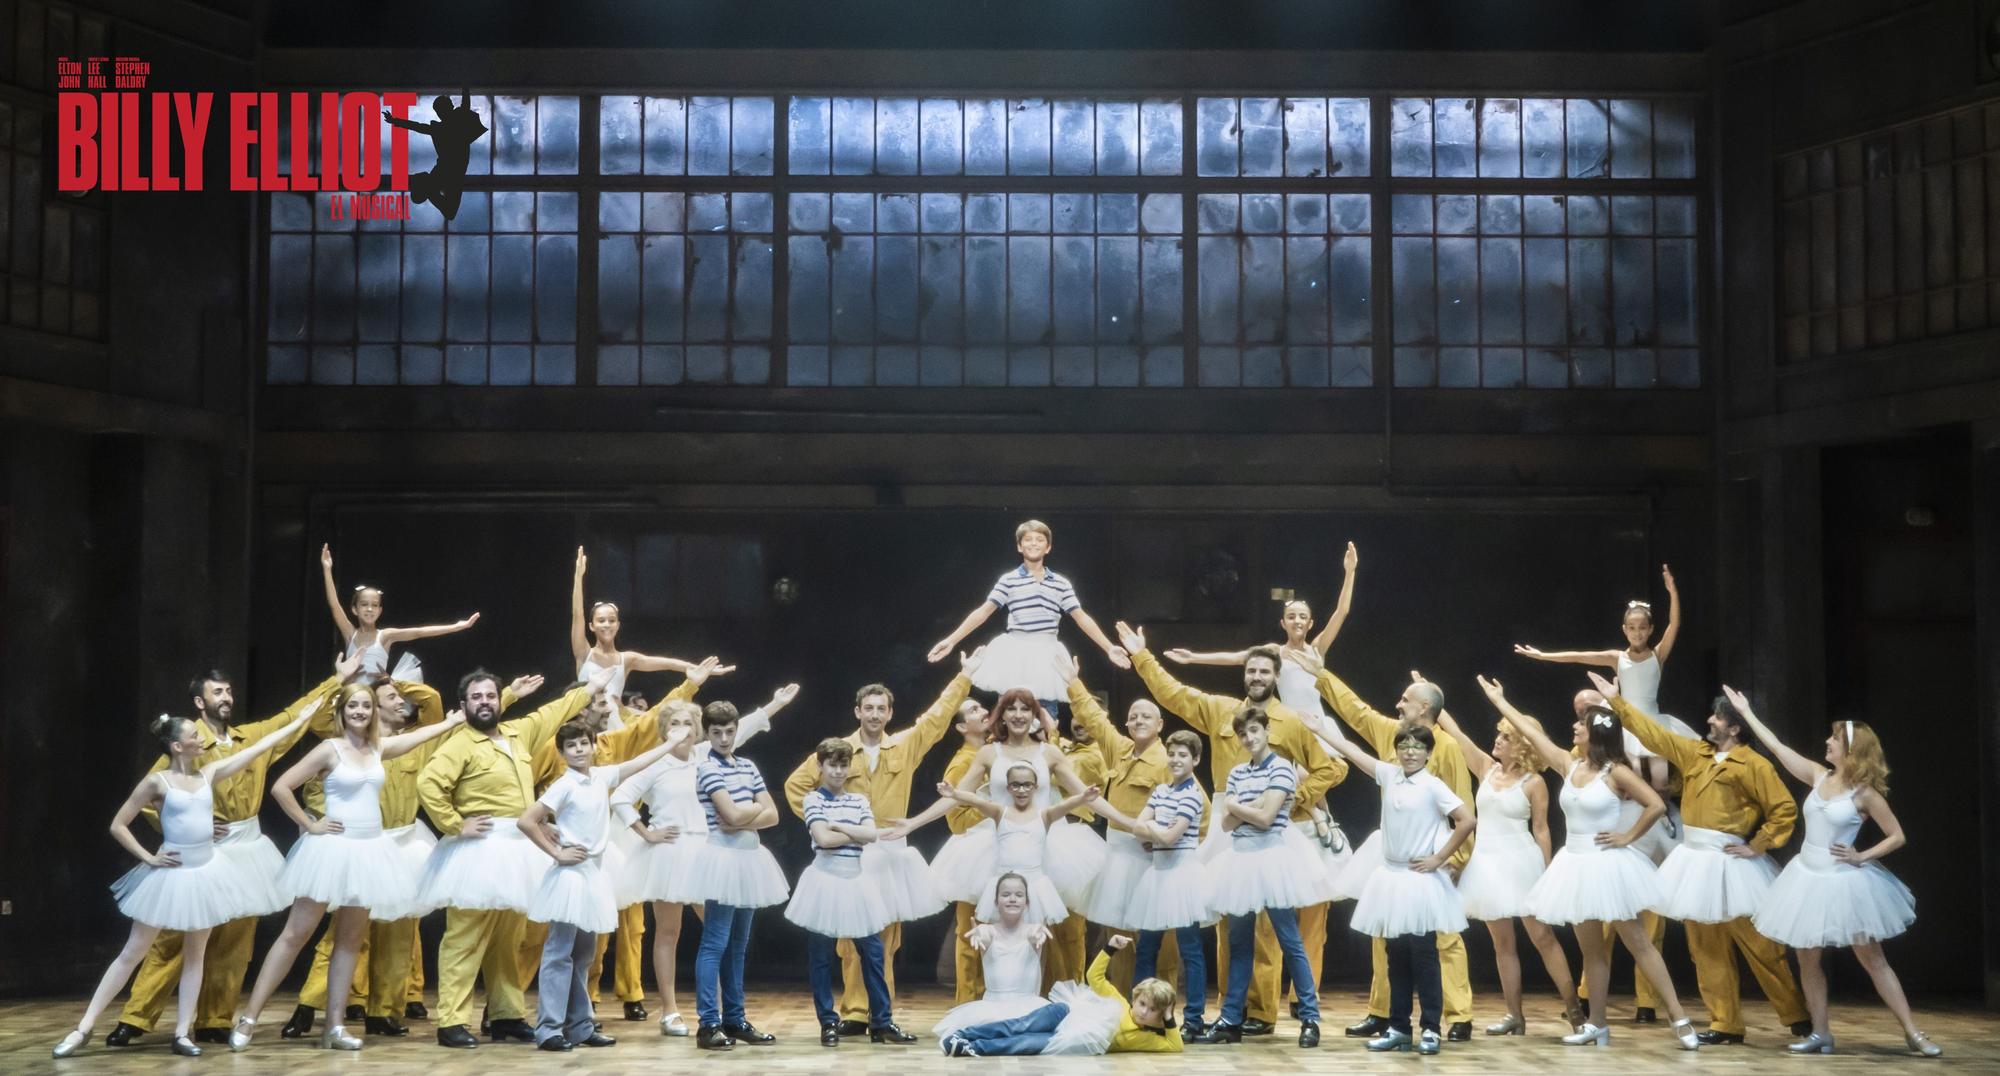 grabadora Transeúnte Reanimar Billy Elliot El musical, se presenta en Barcelona